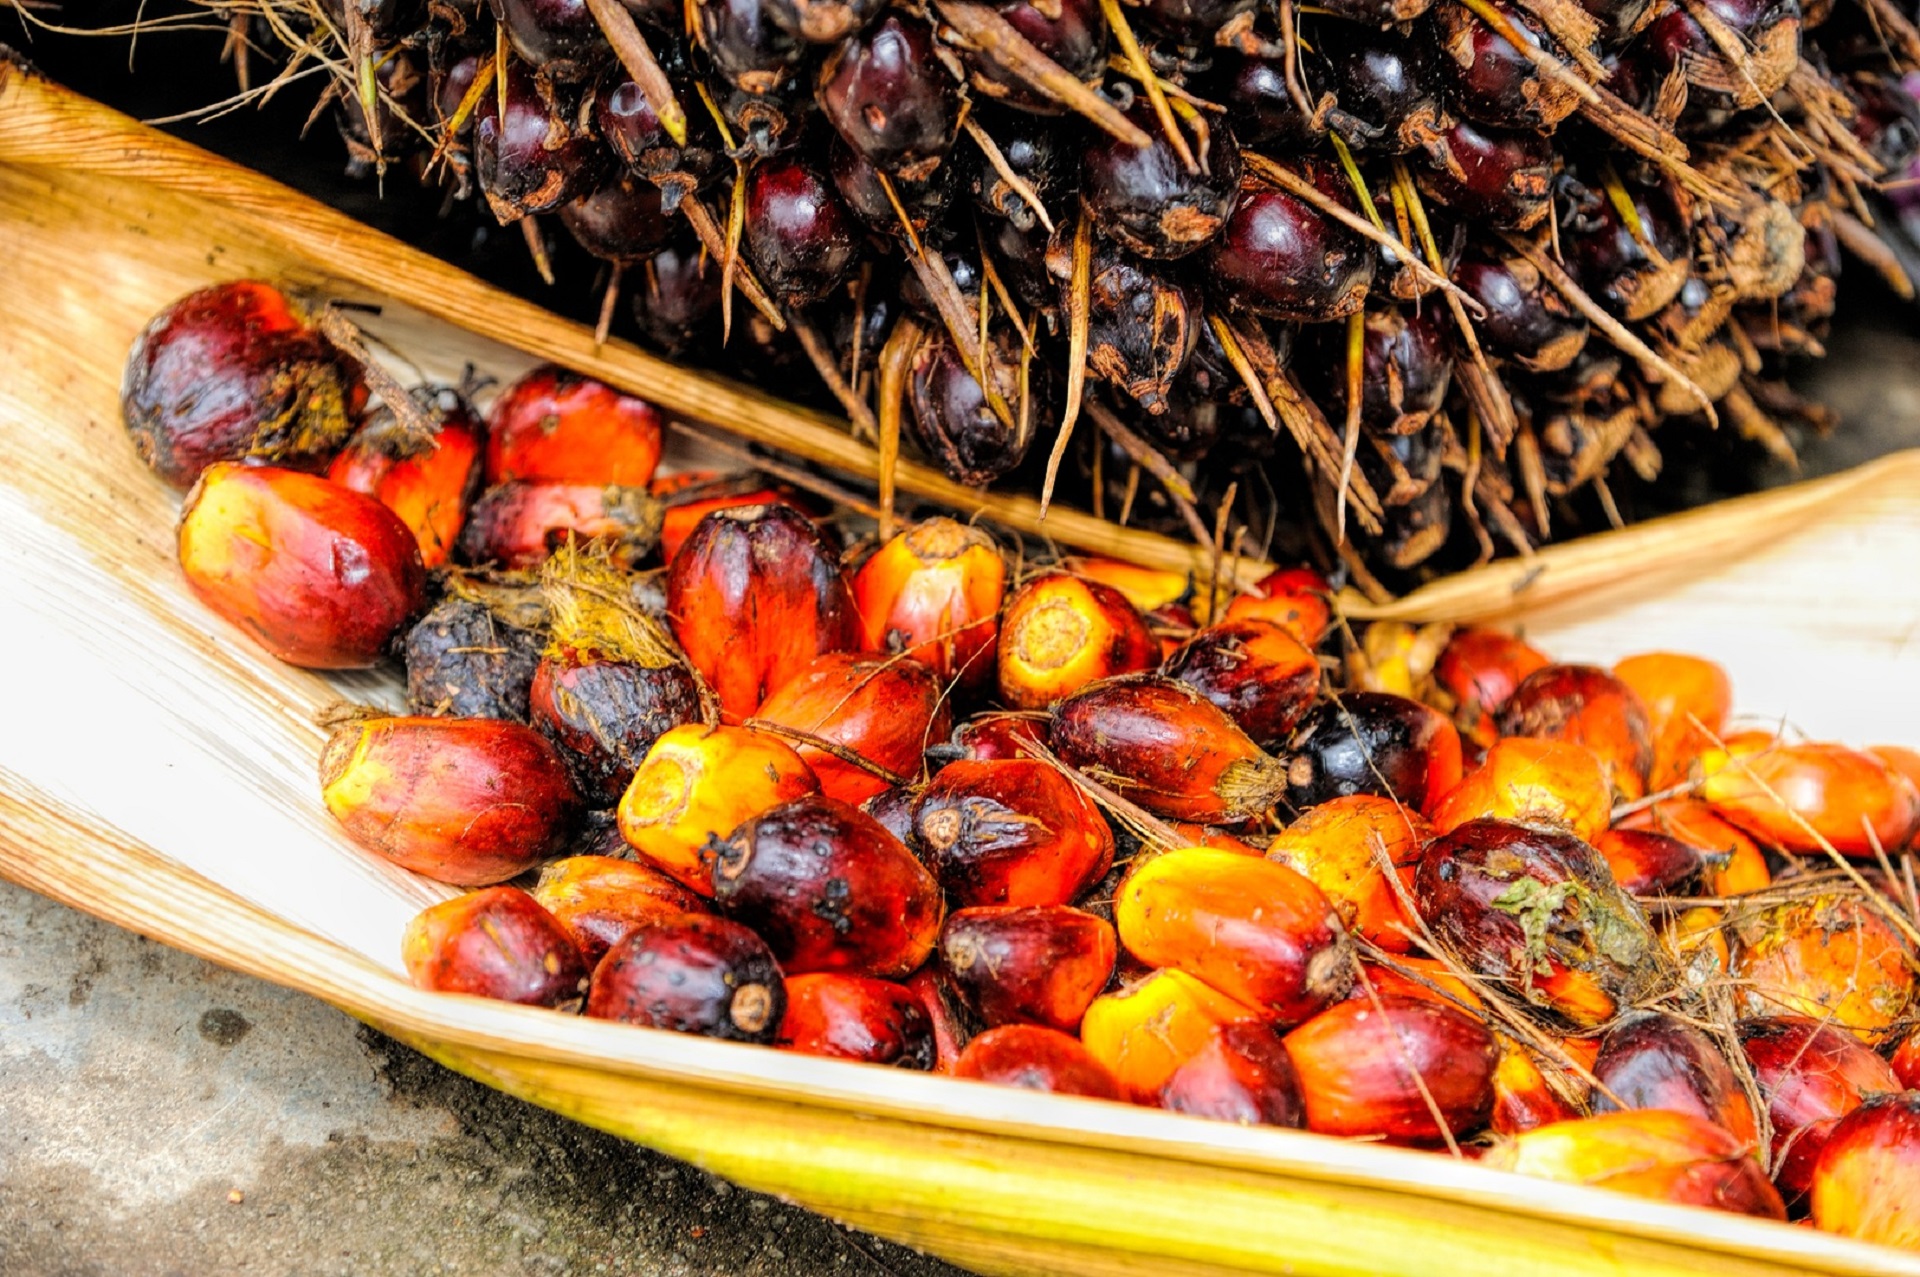 Qué productos contienen aceite de palma